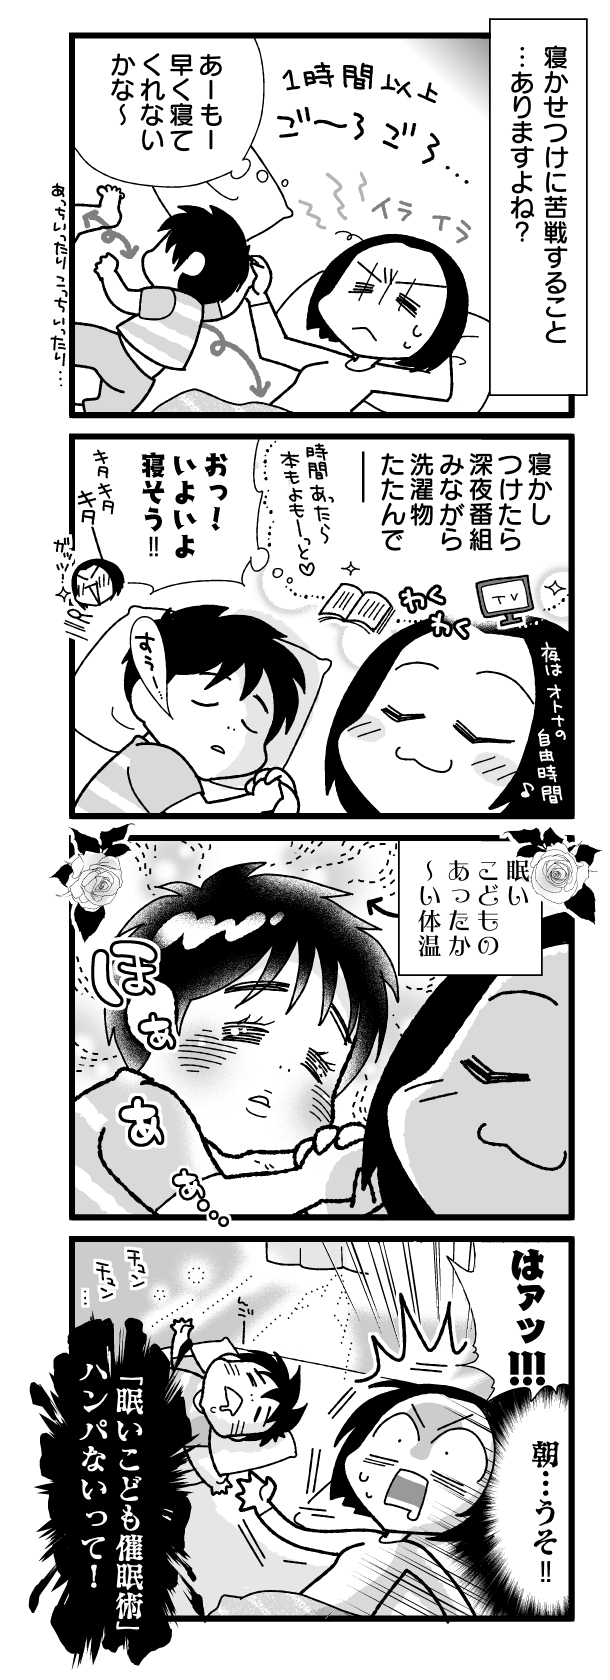 漫画『怒濤のにゅーじヨージ』Vol.203「ねむいこども最強説」 1コマ目